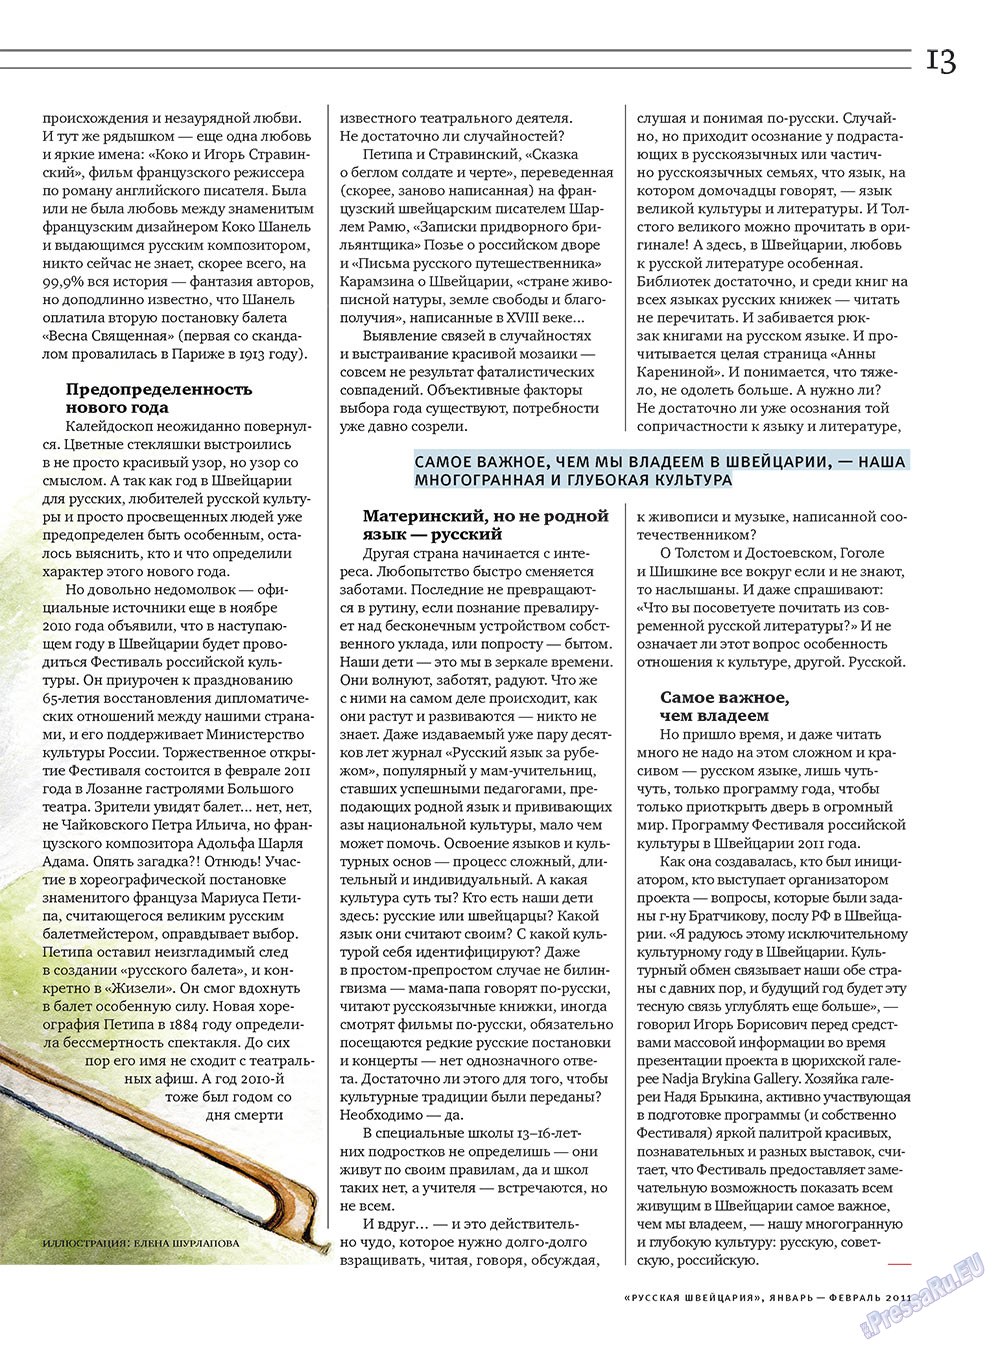 Russkaja Schweizaria (Zeitschrift). 2011 Jahr, Ausgabe 1, Seite 13